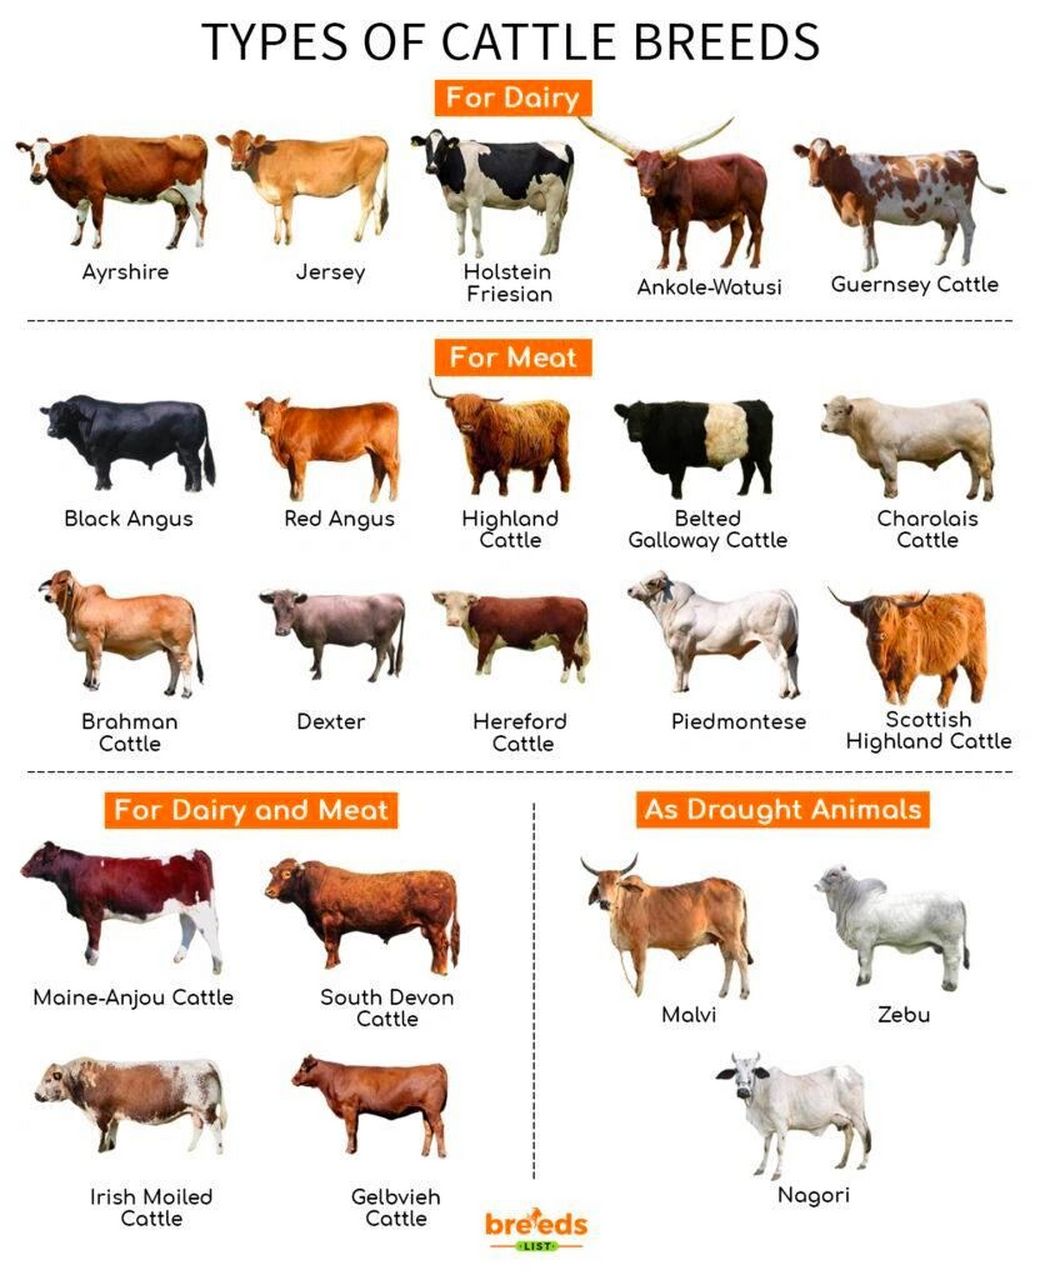 肉牛品种介绍图片大全图片